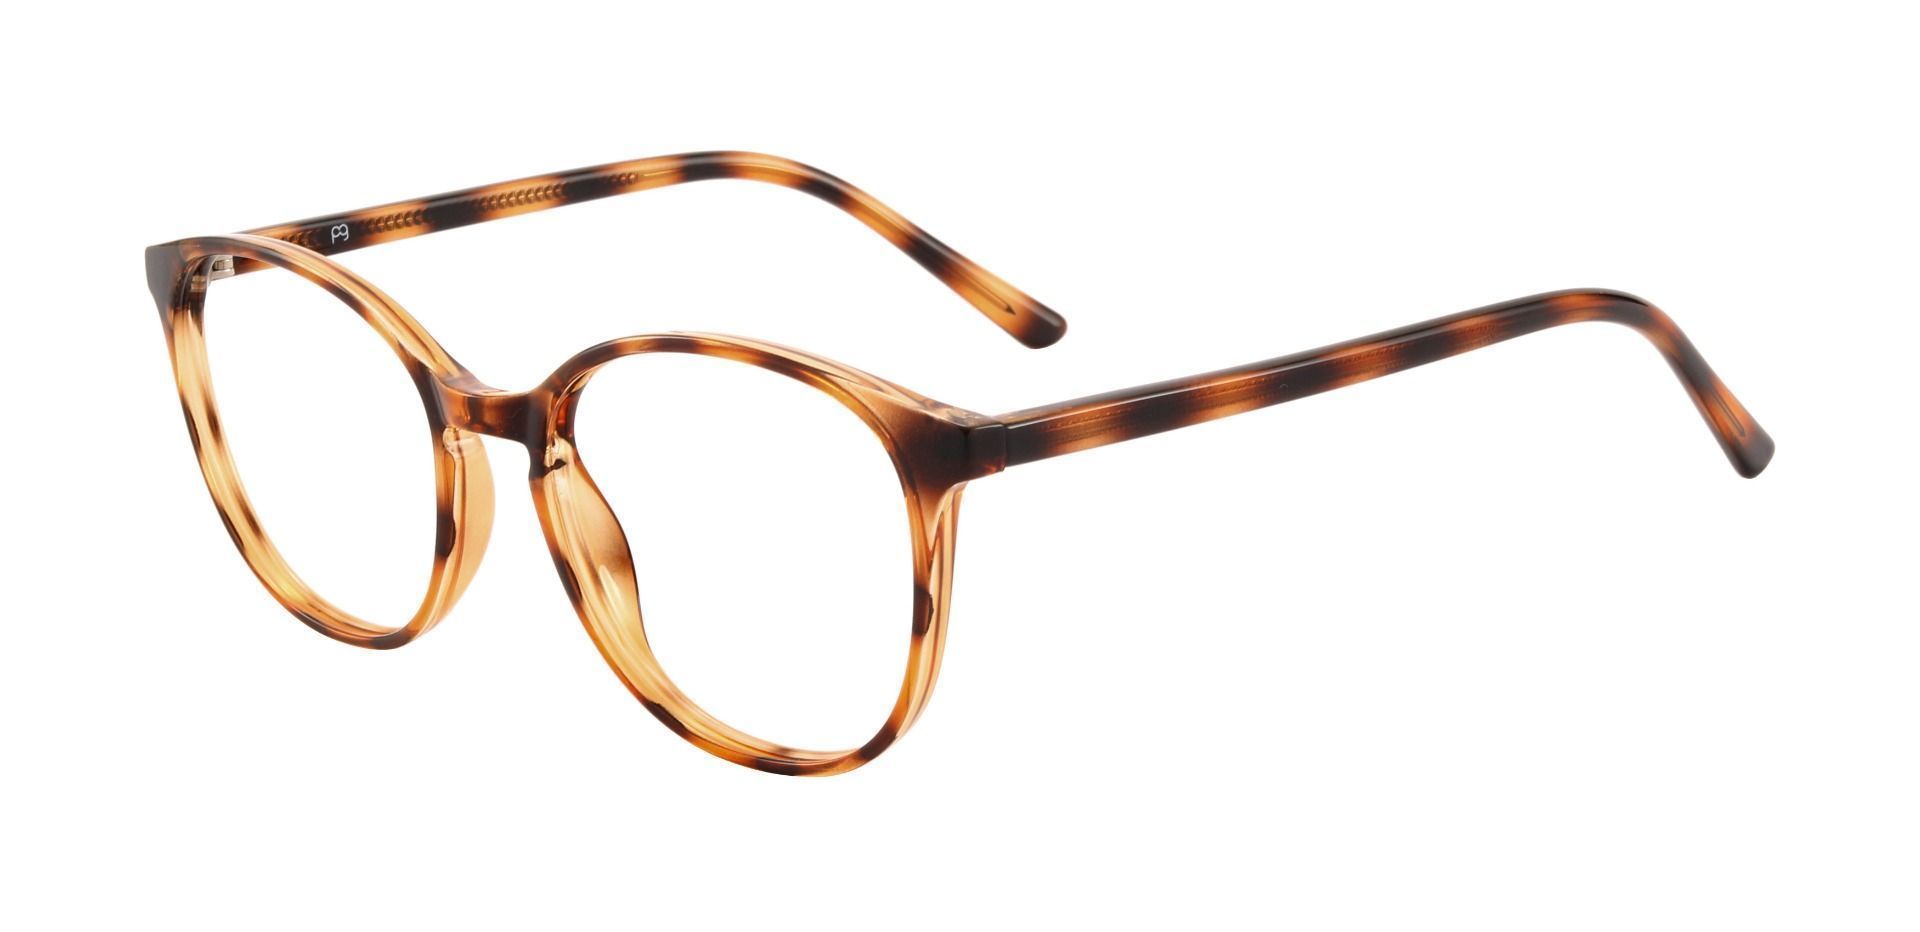 Shanley Oval Progressive Glasses - Tortoise